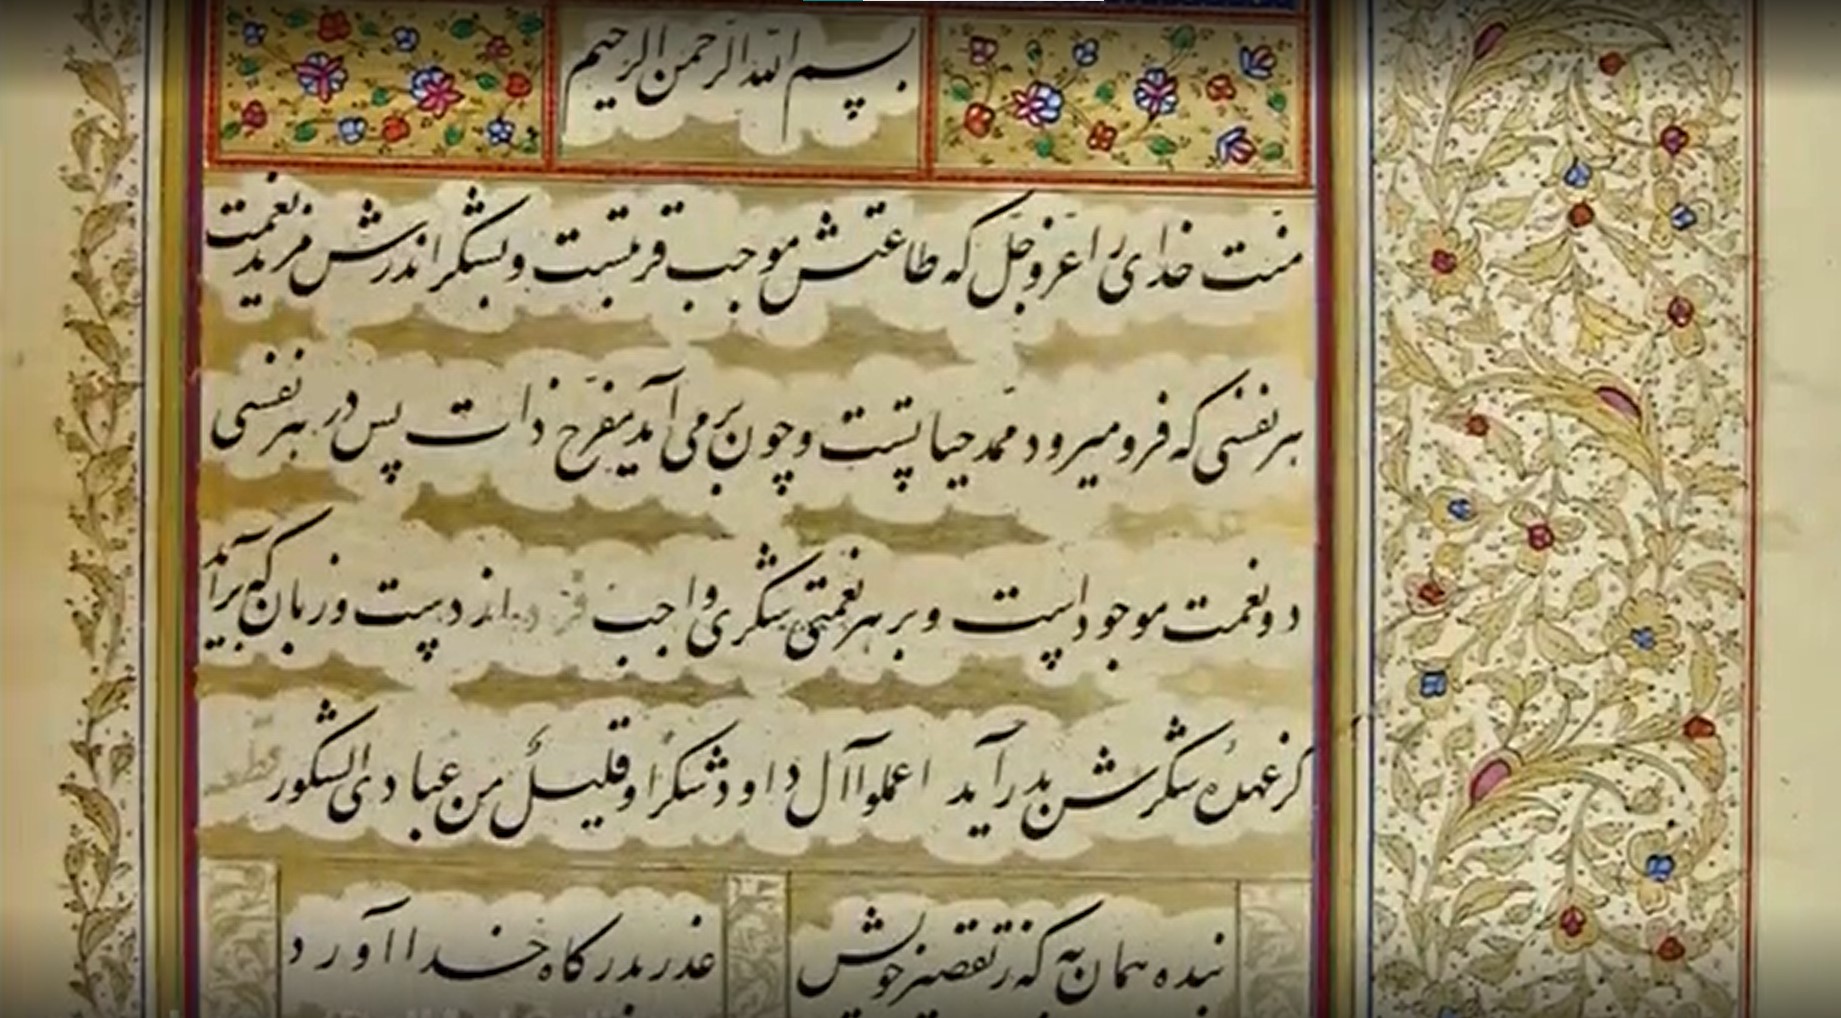 خط محمدحسین شیرازی خوشنویس دوران قاجار